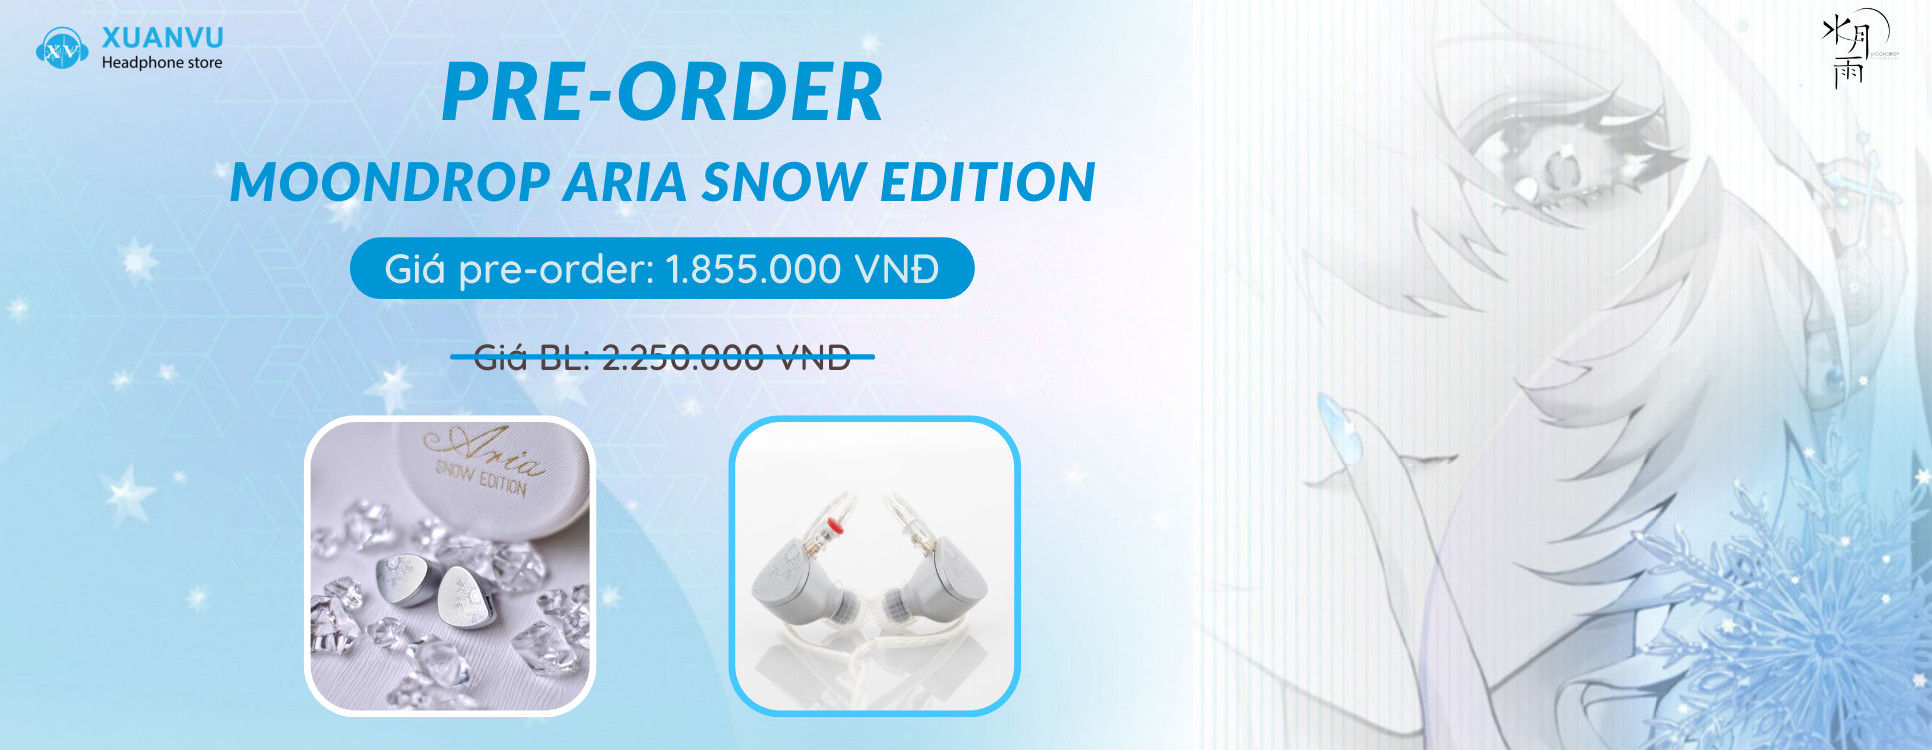 Pre-order Moondrop Aria Snow Edition